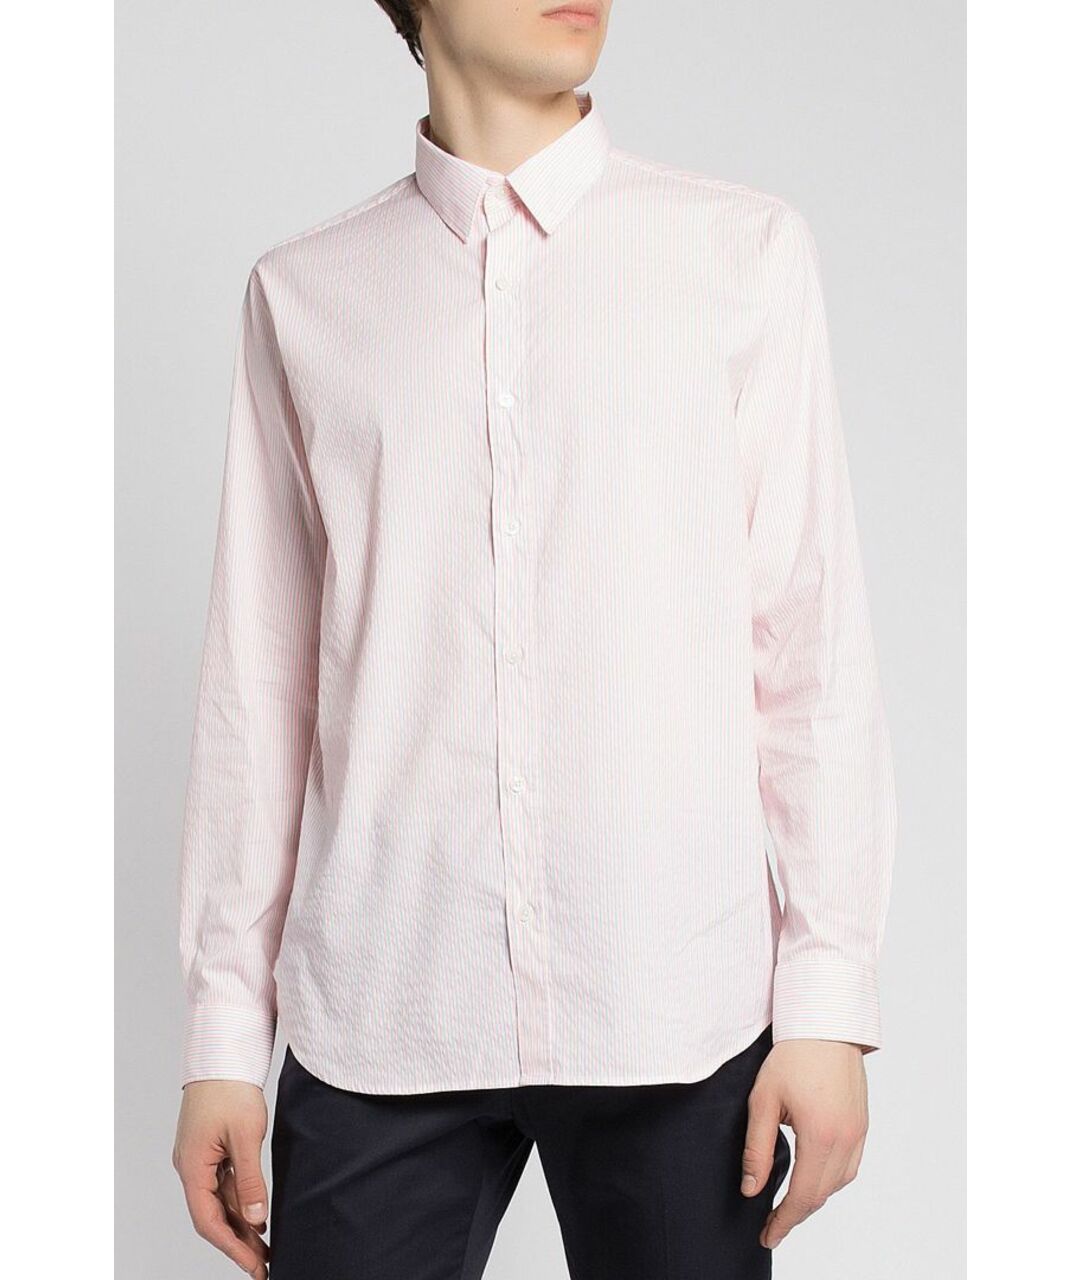 ESSENTIAL Розовая хлопковая классическая рубашка, фото 2